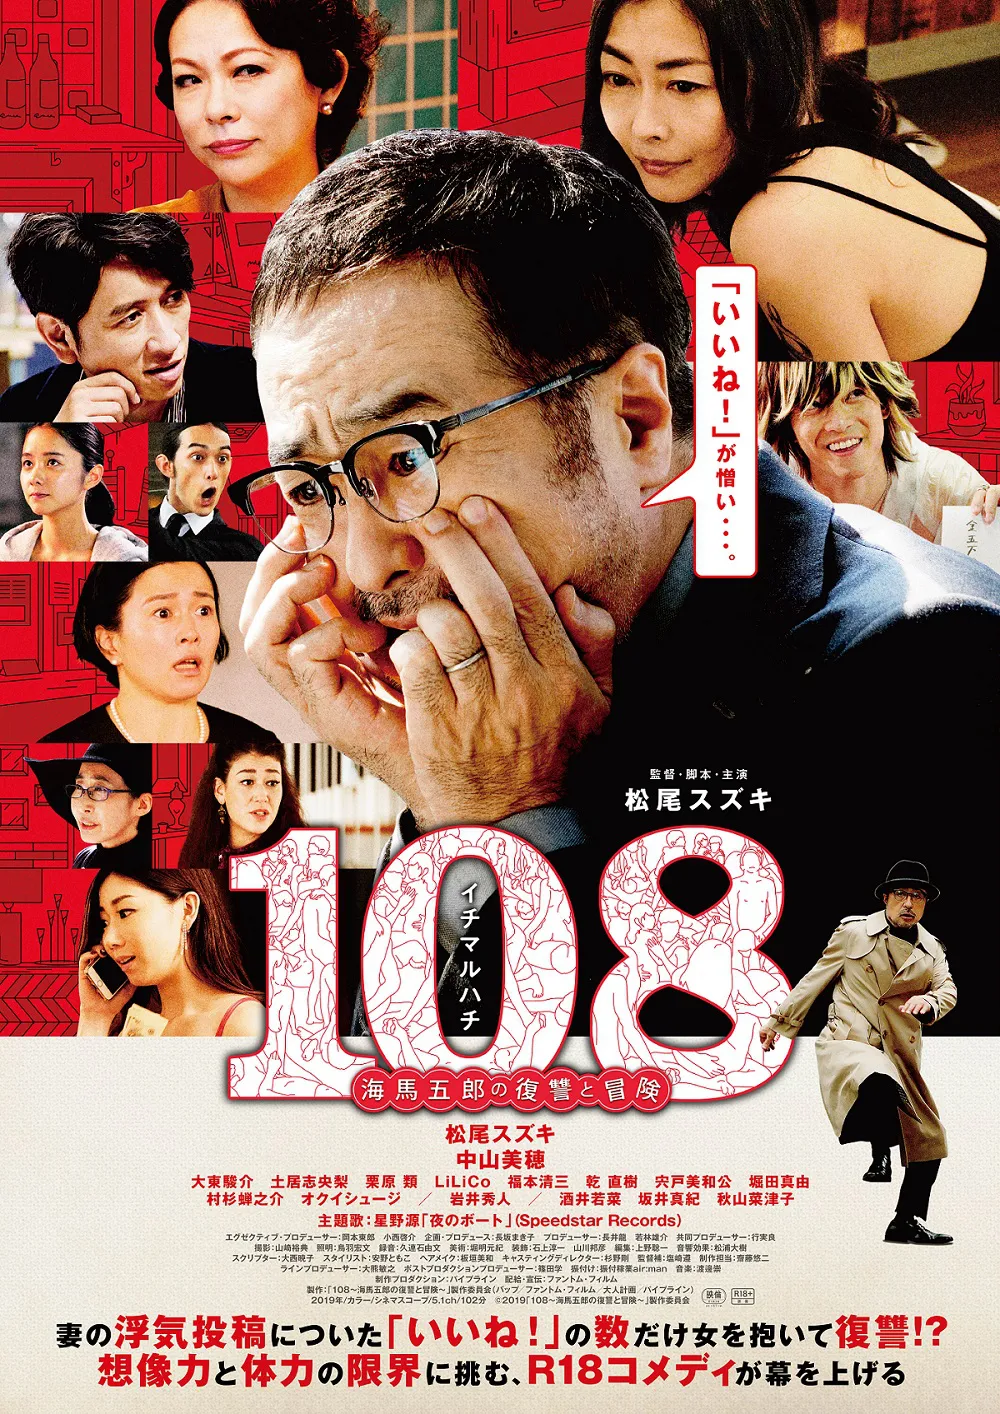 映画「108~海馬五郎の復讐と冒険~」の監督・脚本・主演を務める松尾スズキが、「星野源のANN」に登場！